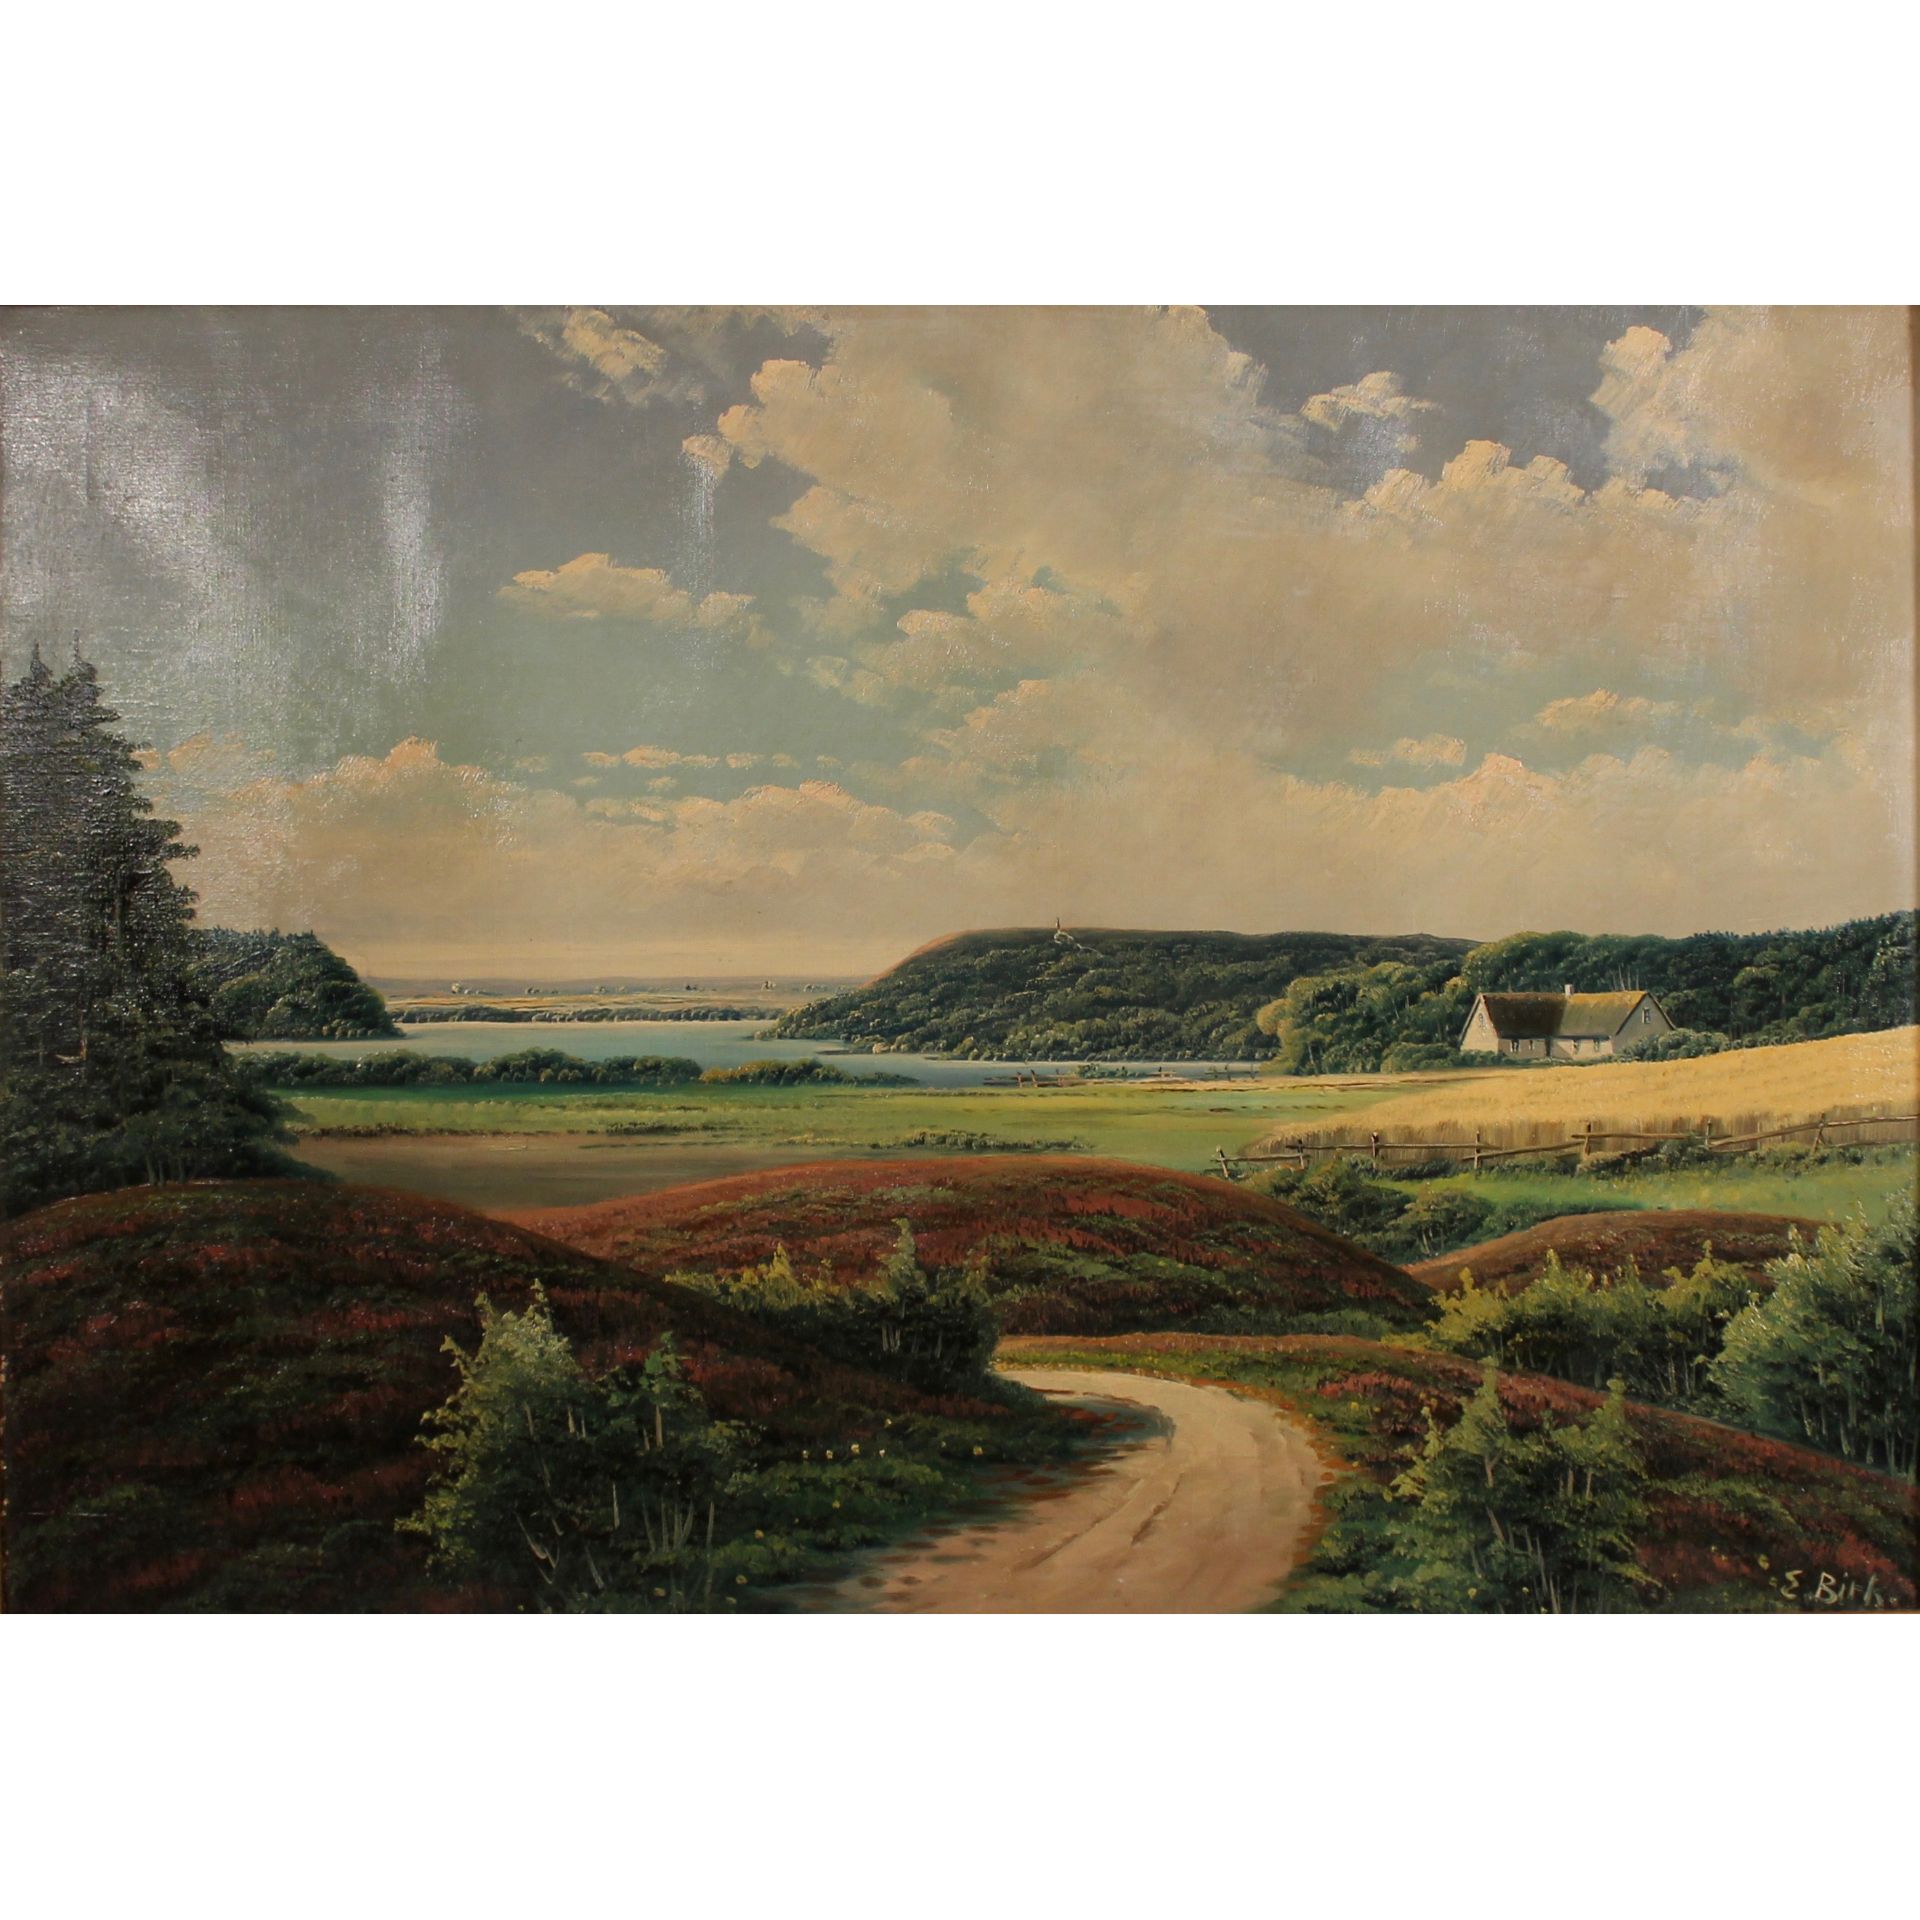 EUGENIUS BIRCH (1818-1884) "Paesaggio con casa sullo sfondo" - "Landscape with house in the backgrou